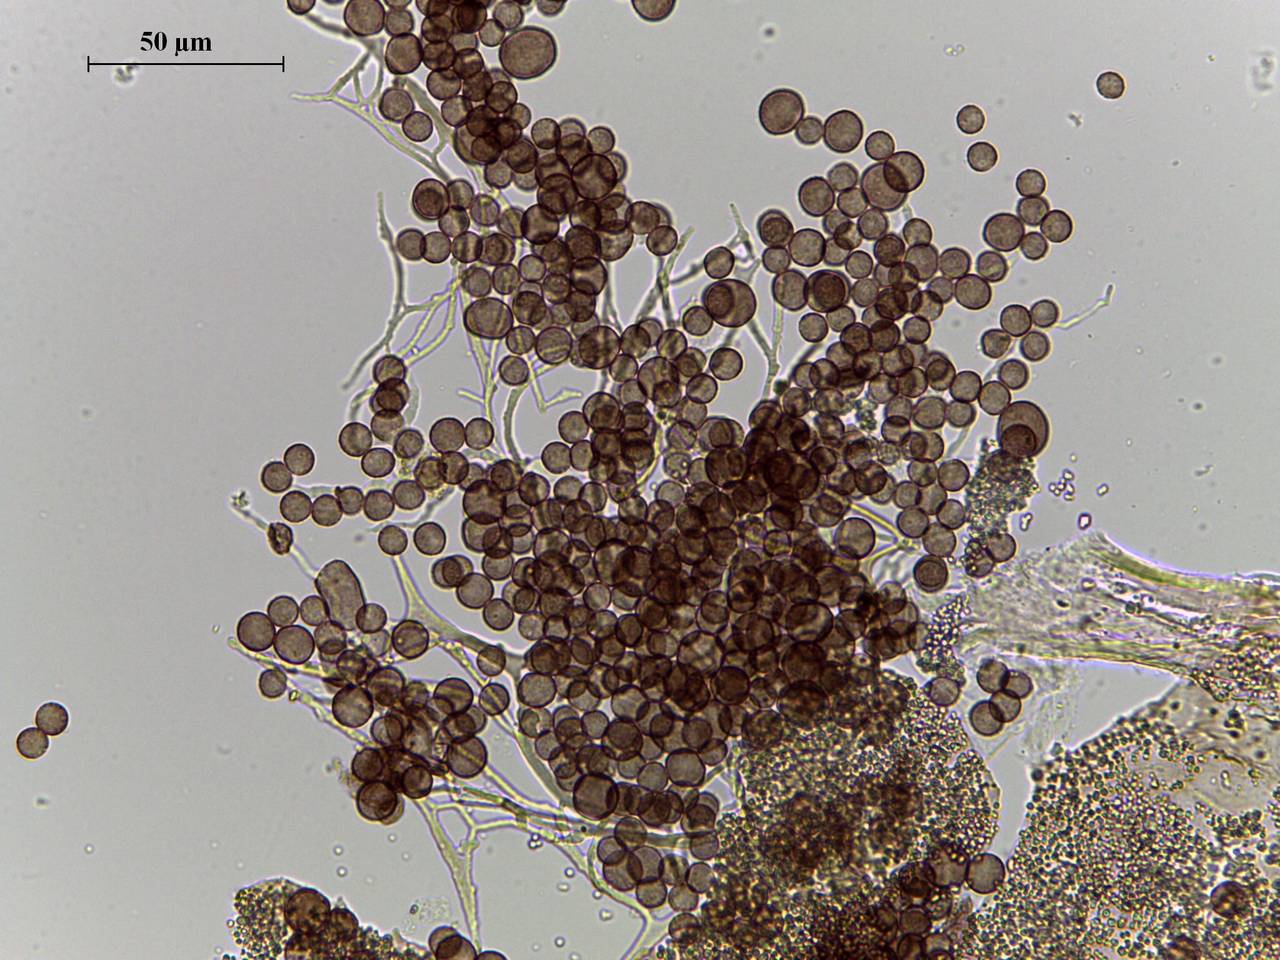 Diderma chondrioderma споры в проходящем свете × 1000, Калининский, Тверская область (Россия)